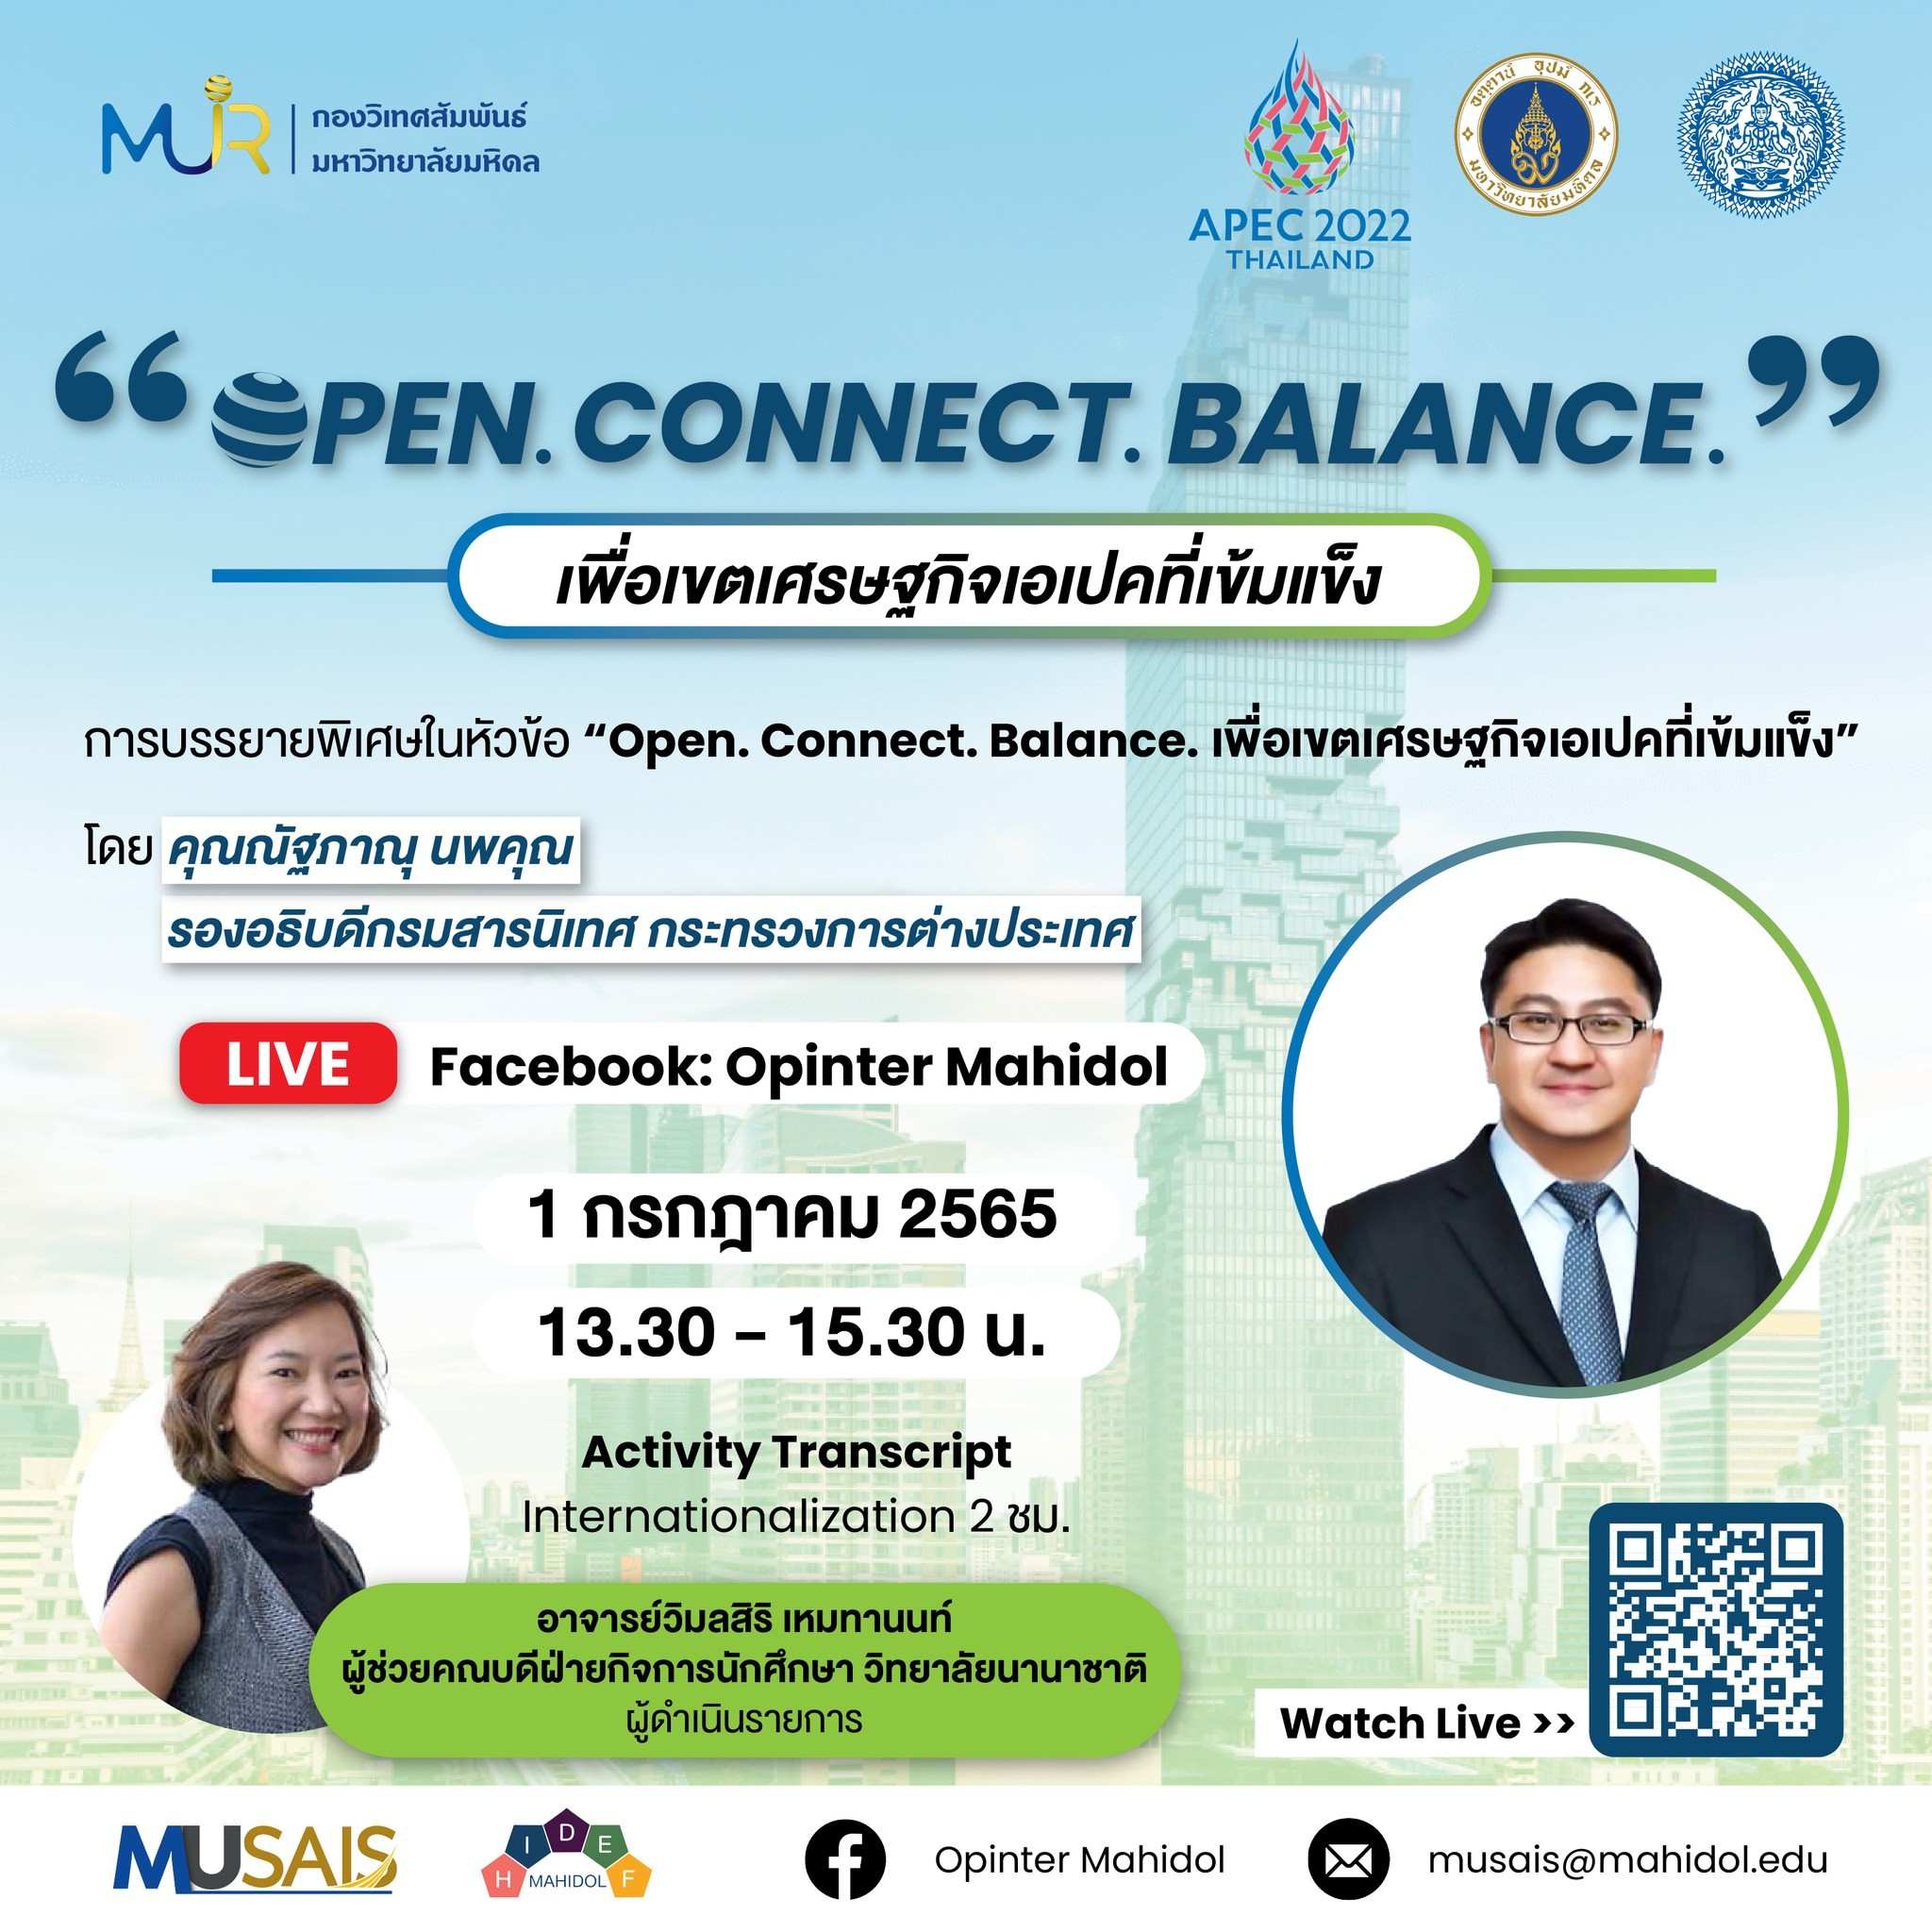 การบรรยายพิเศษ APEC "Open. Connect. Balance. เพื่อเขตเศรษฐกิจที่เข้มแข็ง" @ สำนักงานอธิการบดี